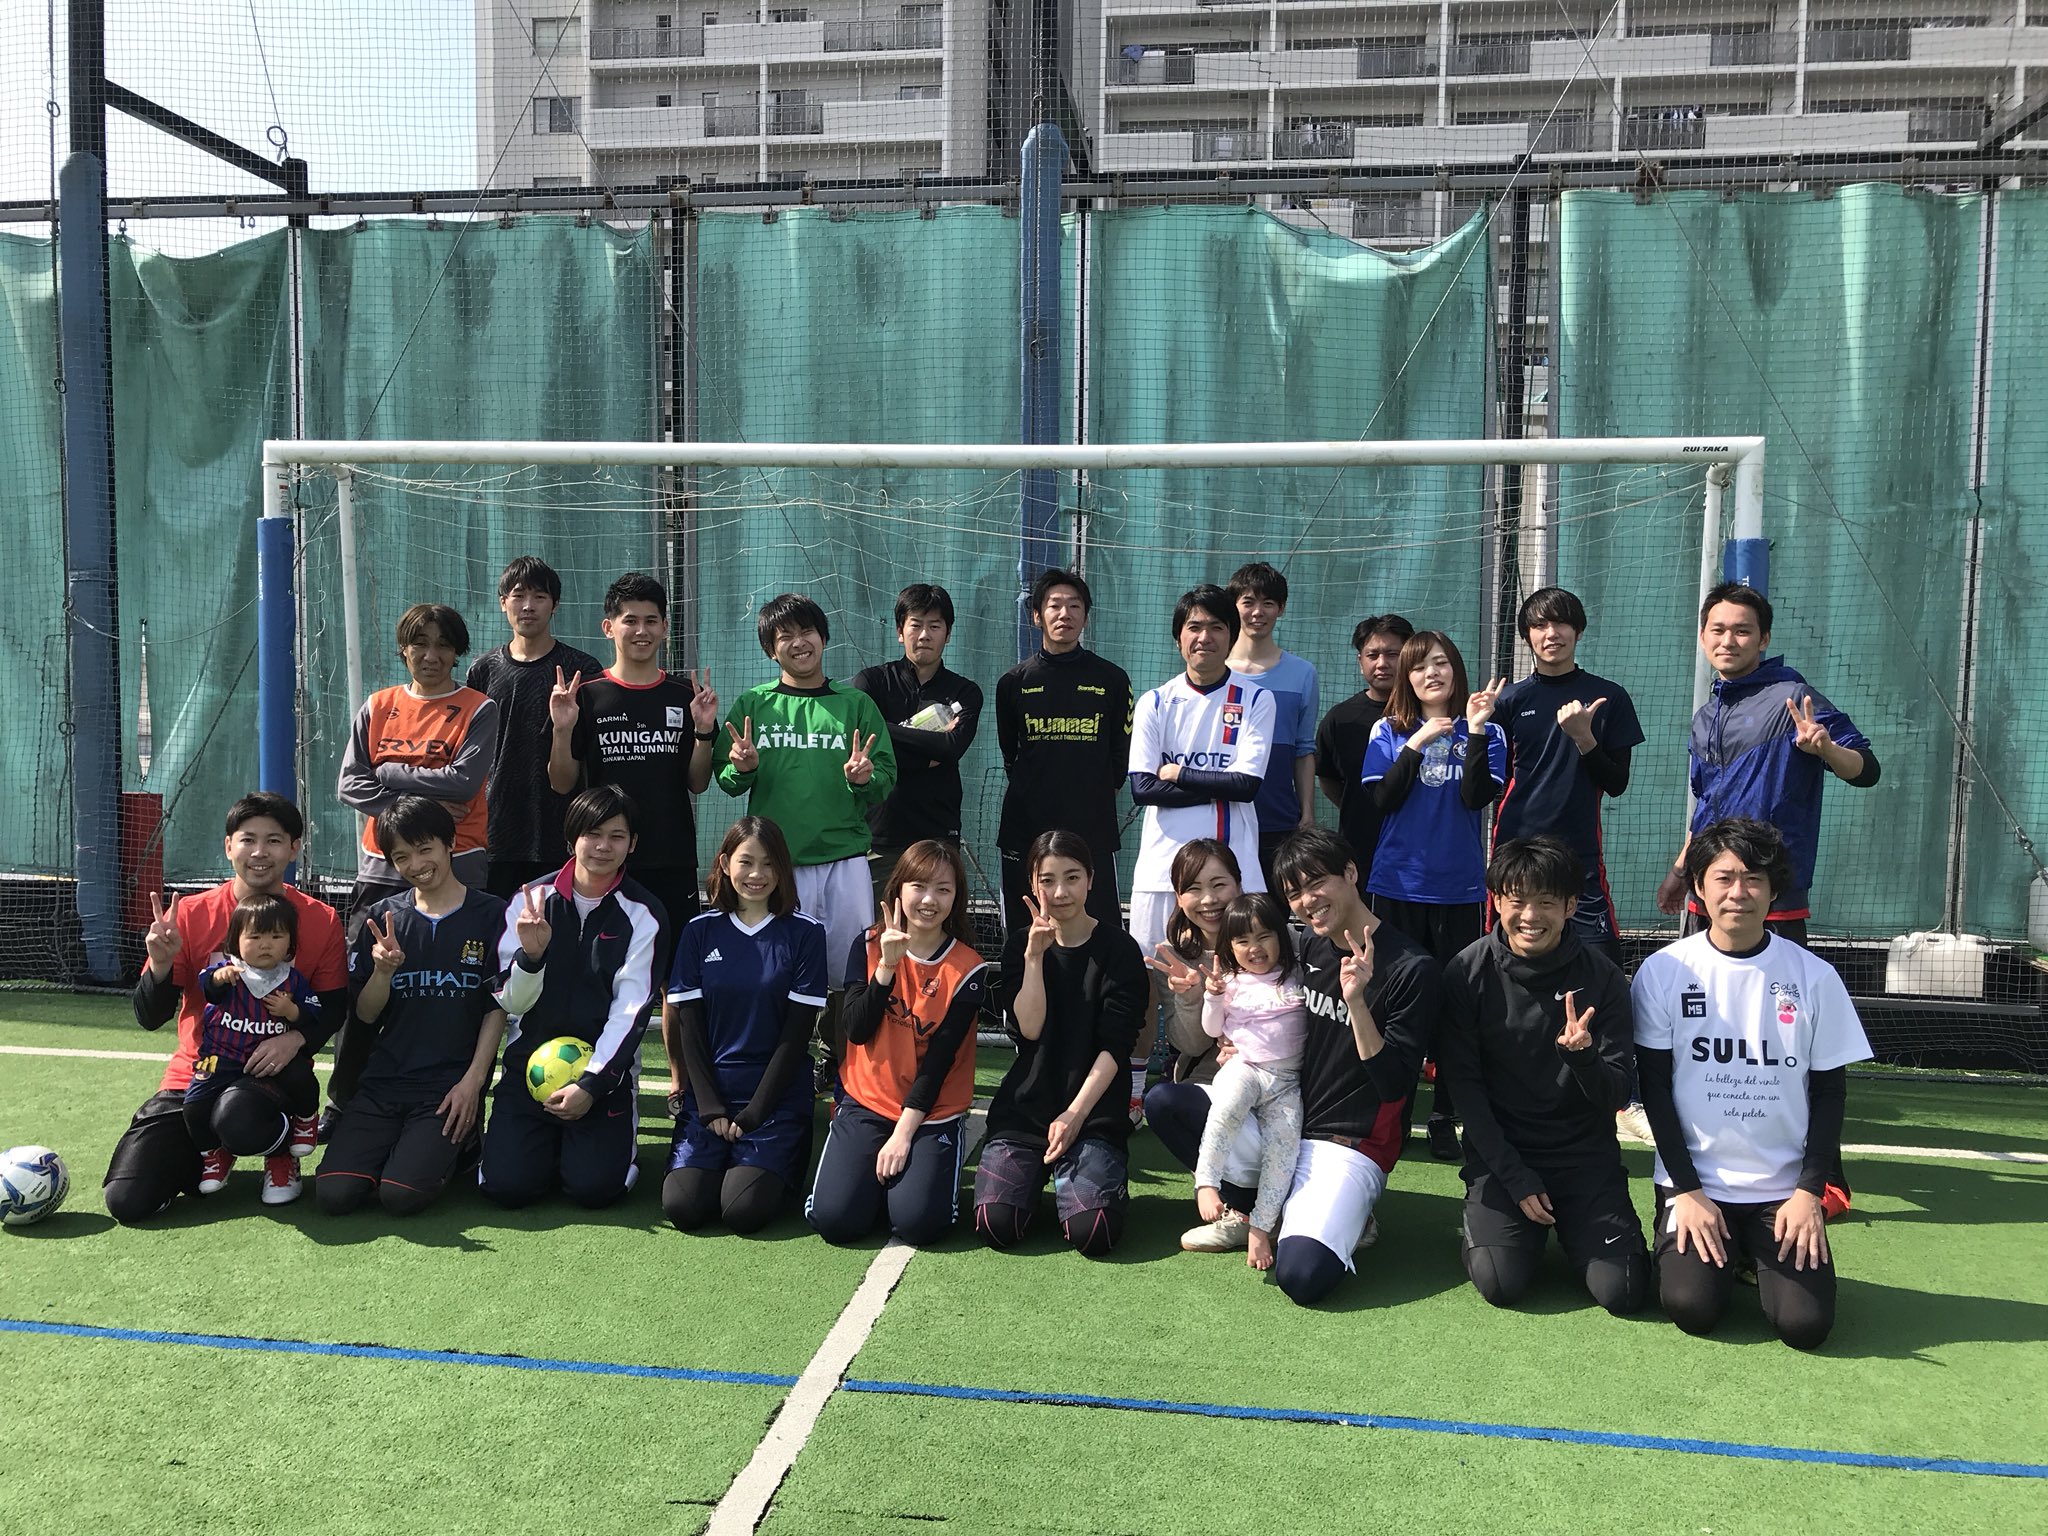 社会人フットサルサークルinf 南船橋 千葉 西船橋 松戸 流山 Inf Futsal Twitter